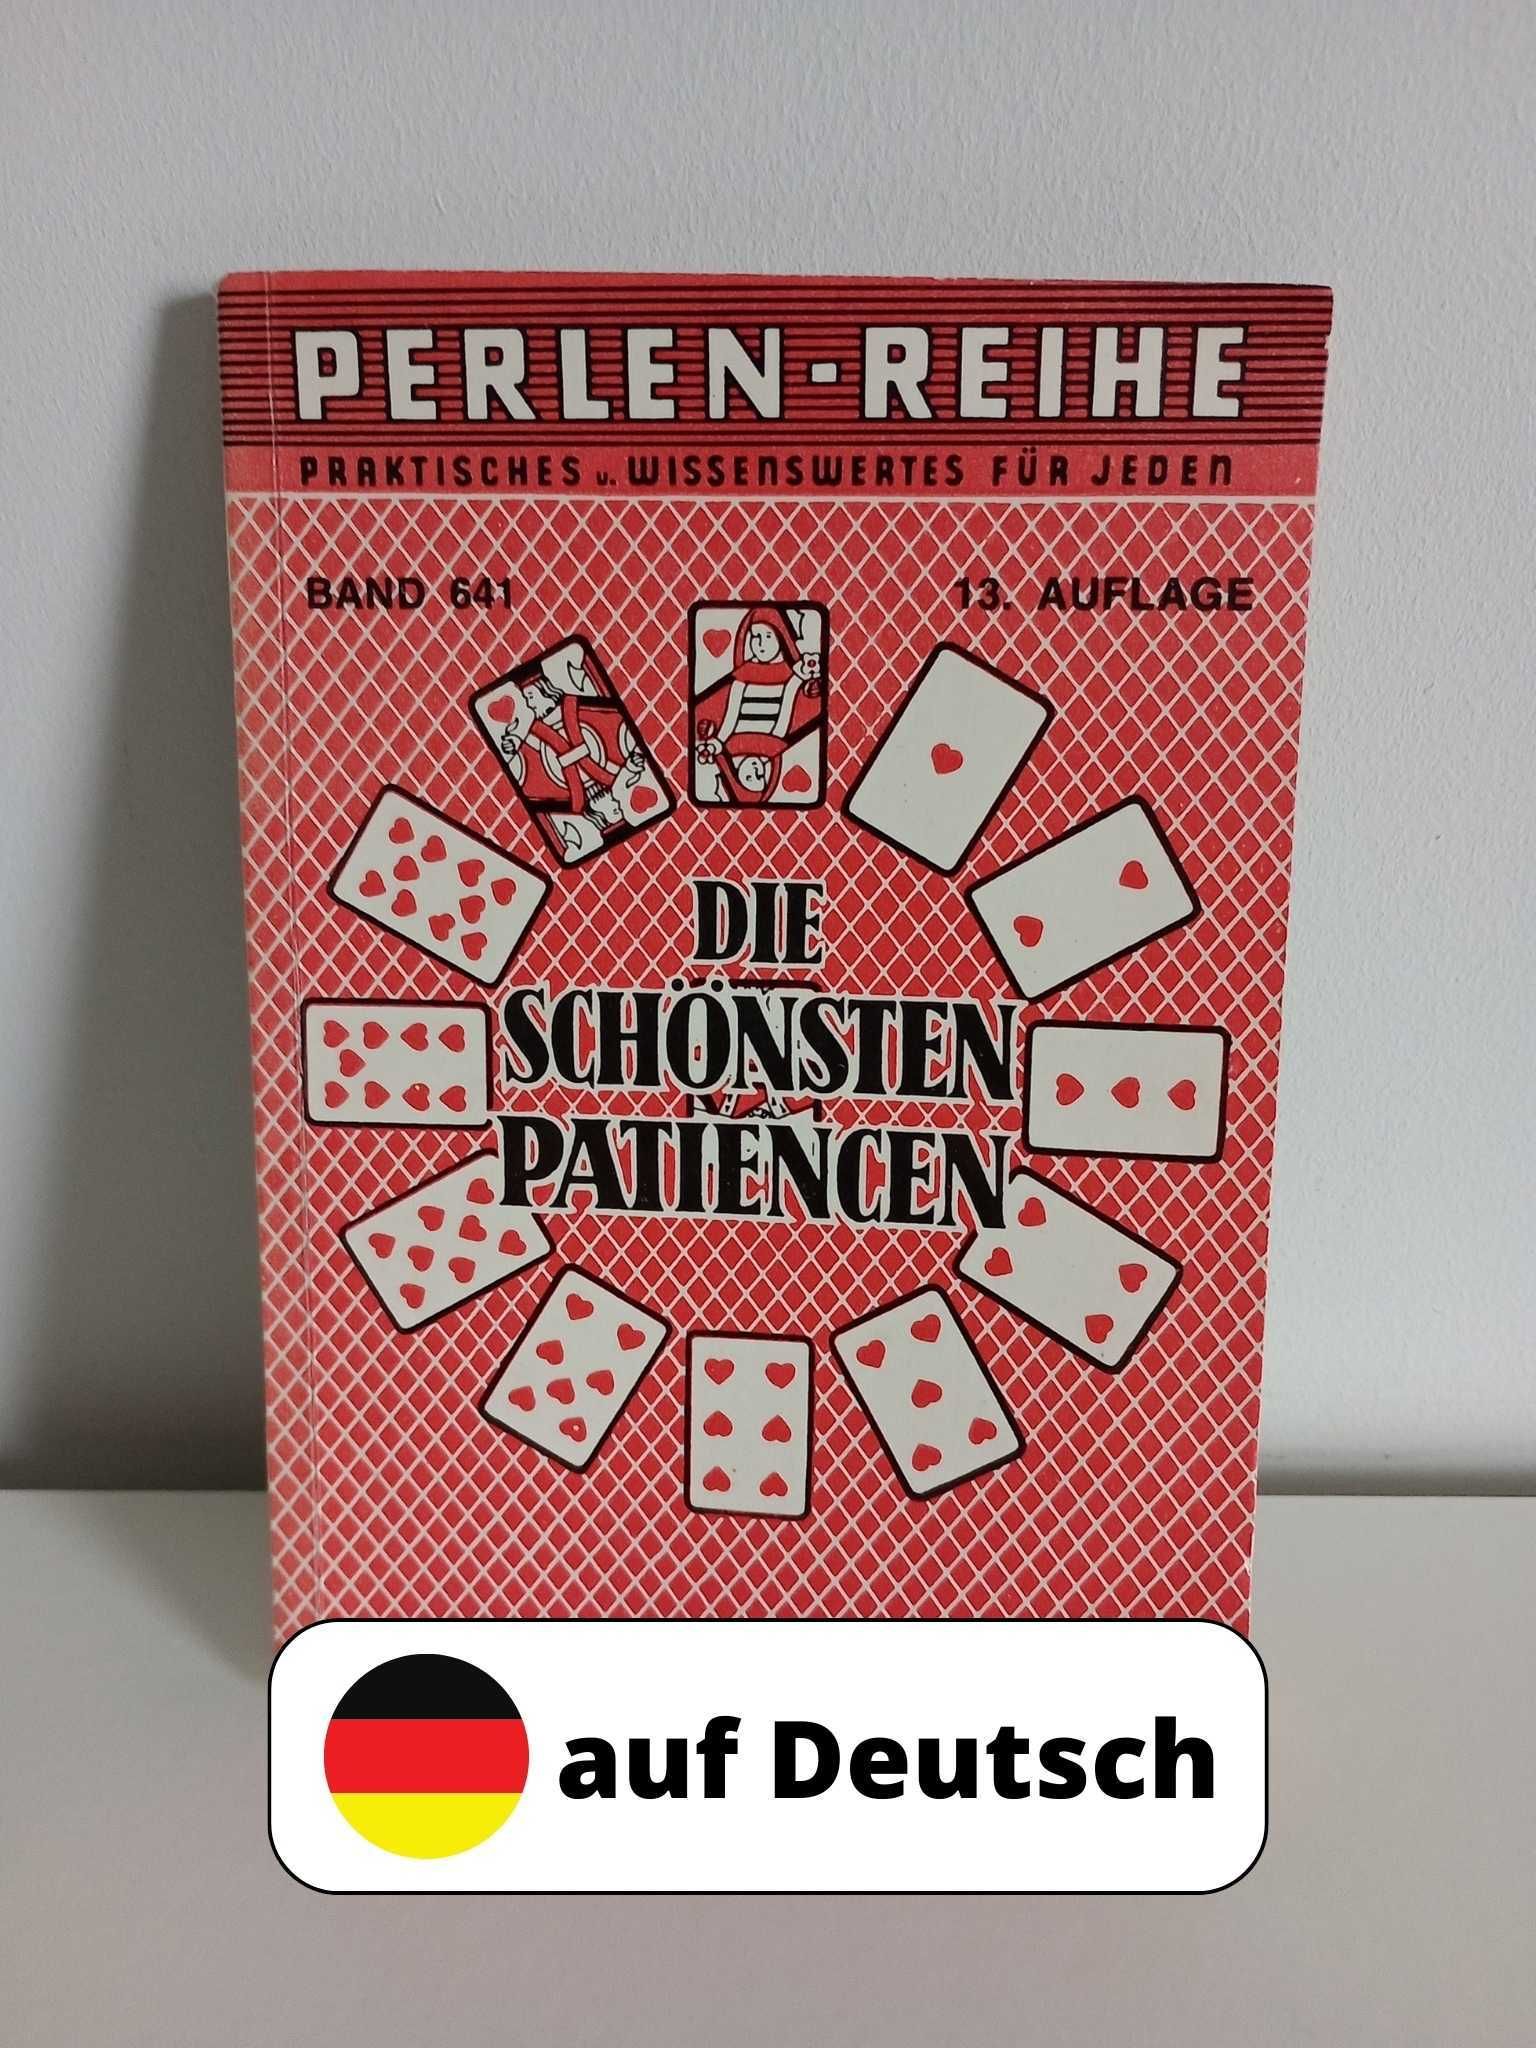 Die schonsten Patiencen po niemiecku auf Deutsch